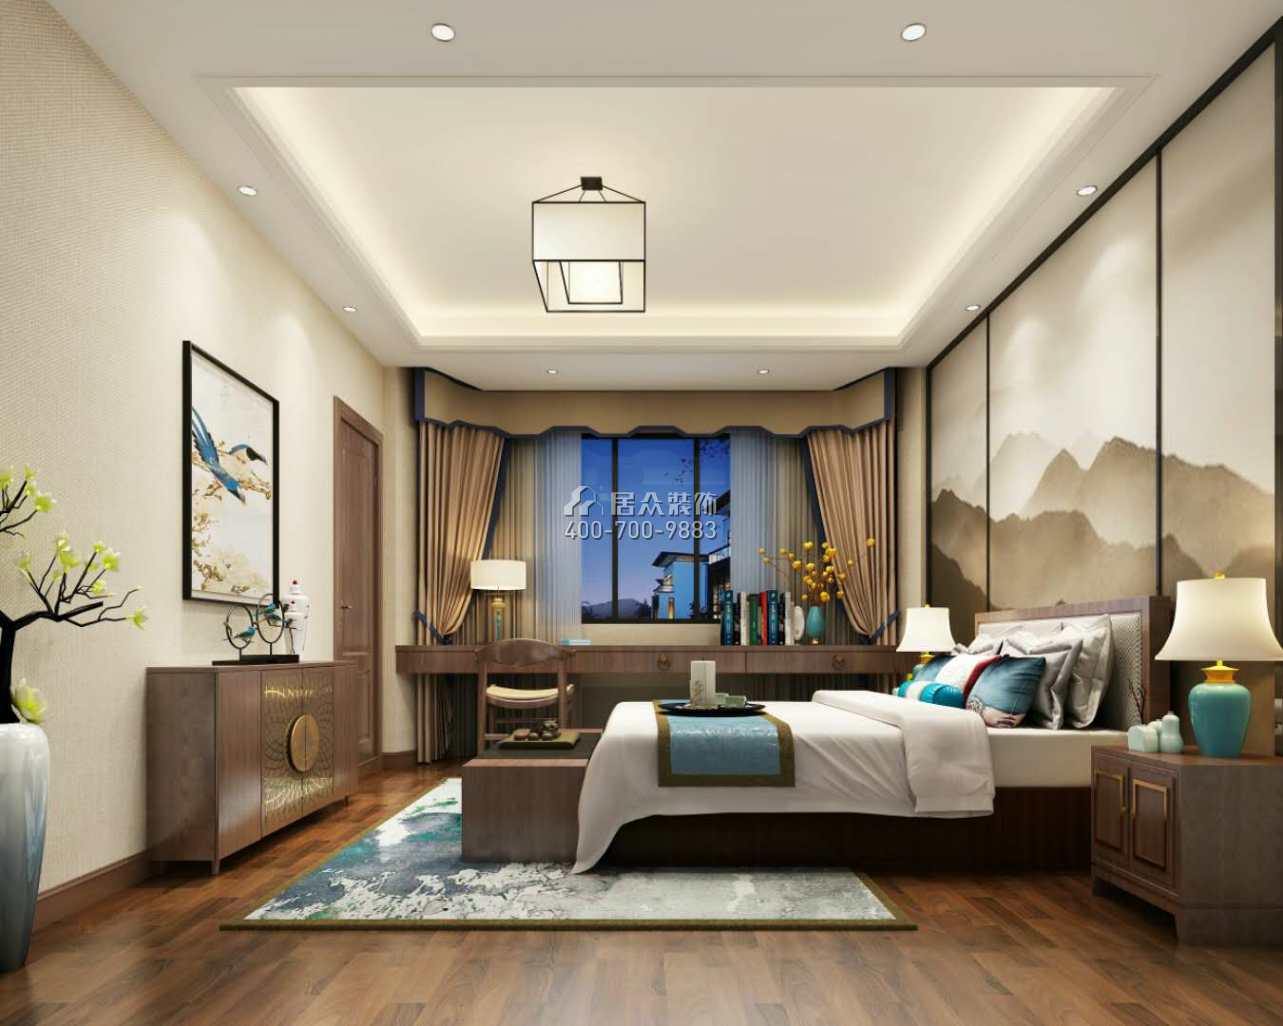 海逸豪庭尚都280平方米中式風格別墅戶型臥室裝修效果圖